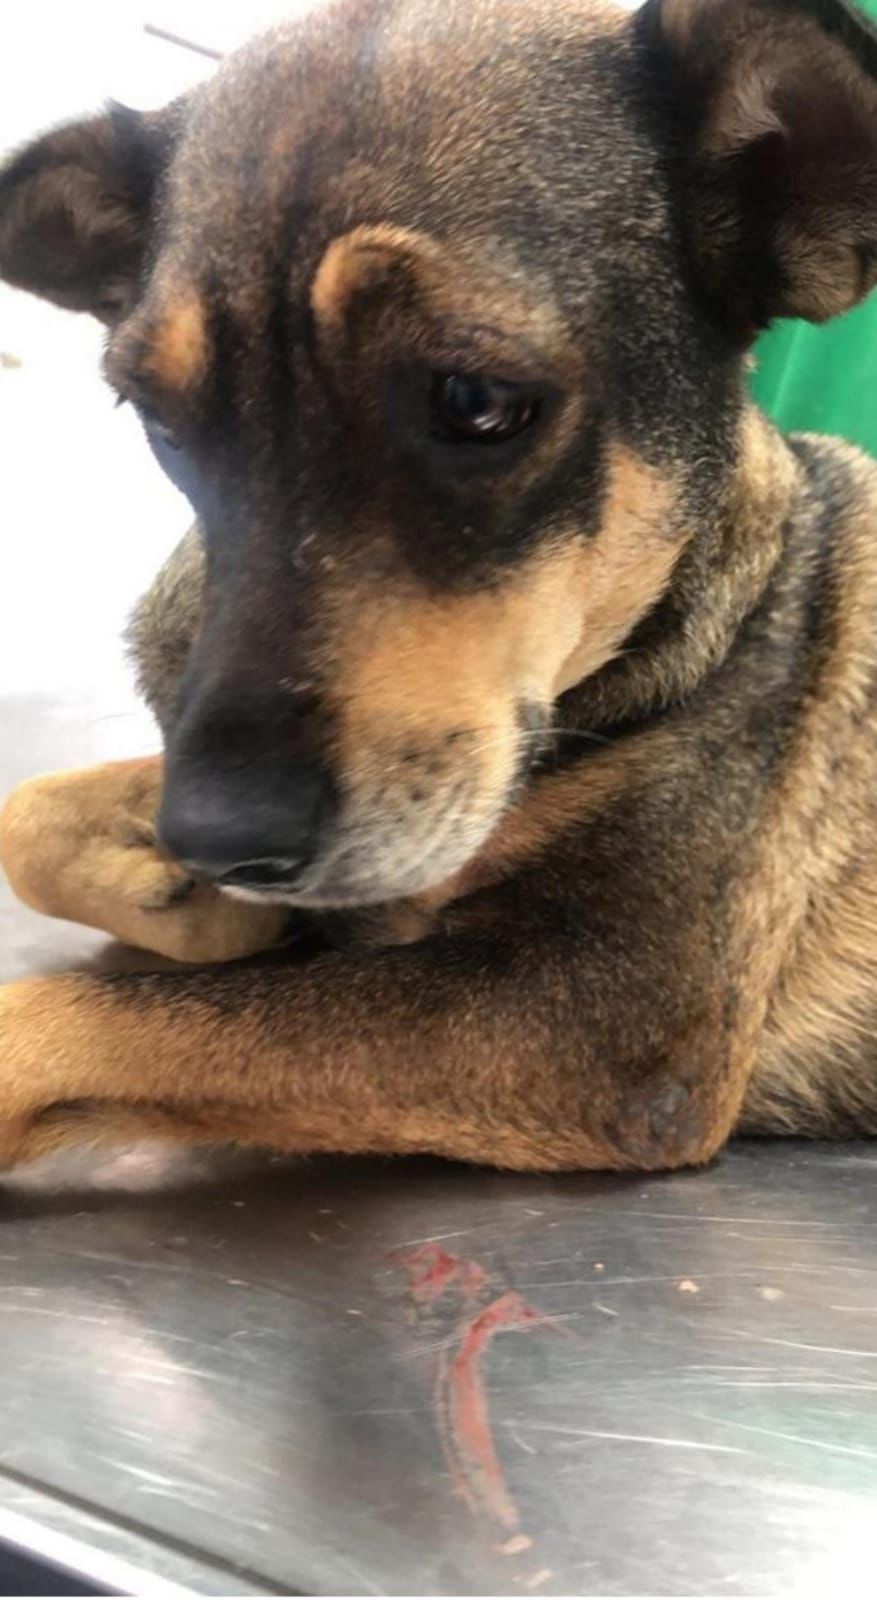 Zoofilia: Exame veterinário indica possíveis sinais de abuso sexual em cadela de Barra do Piraí